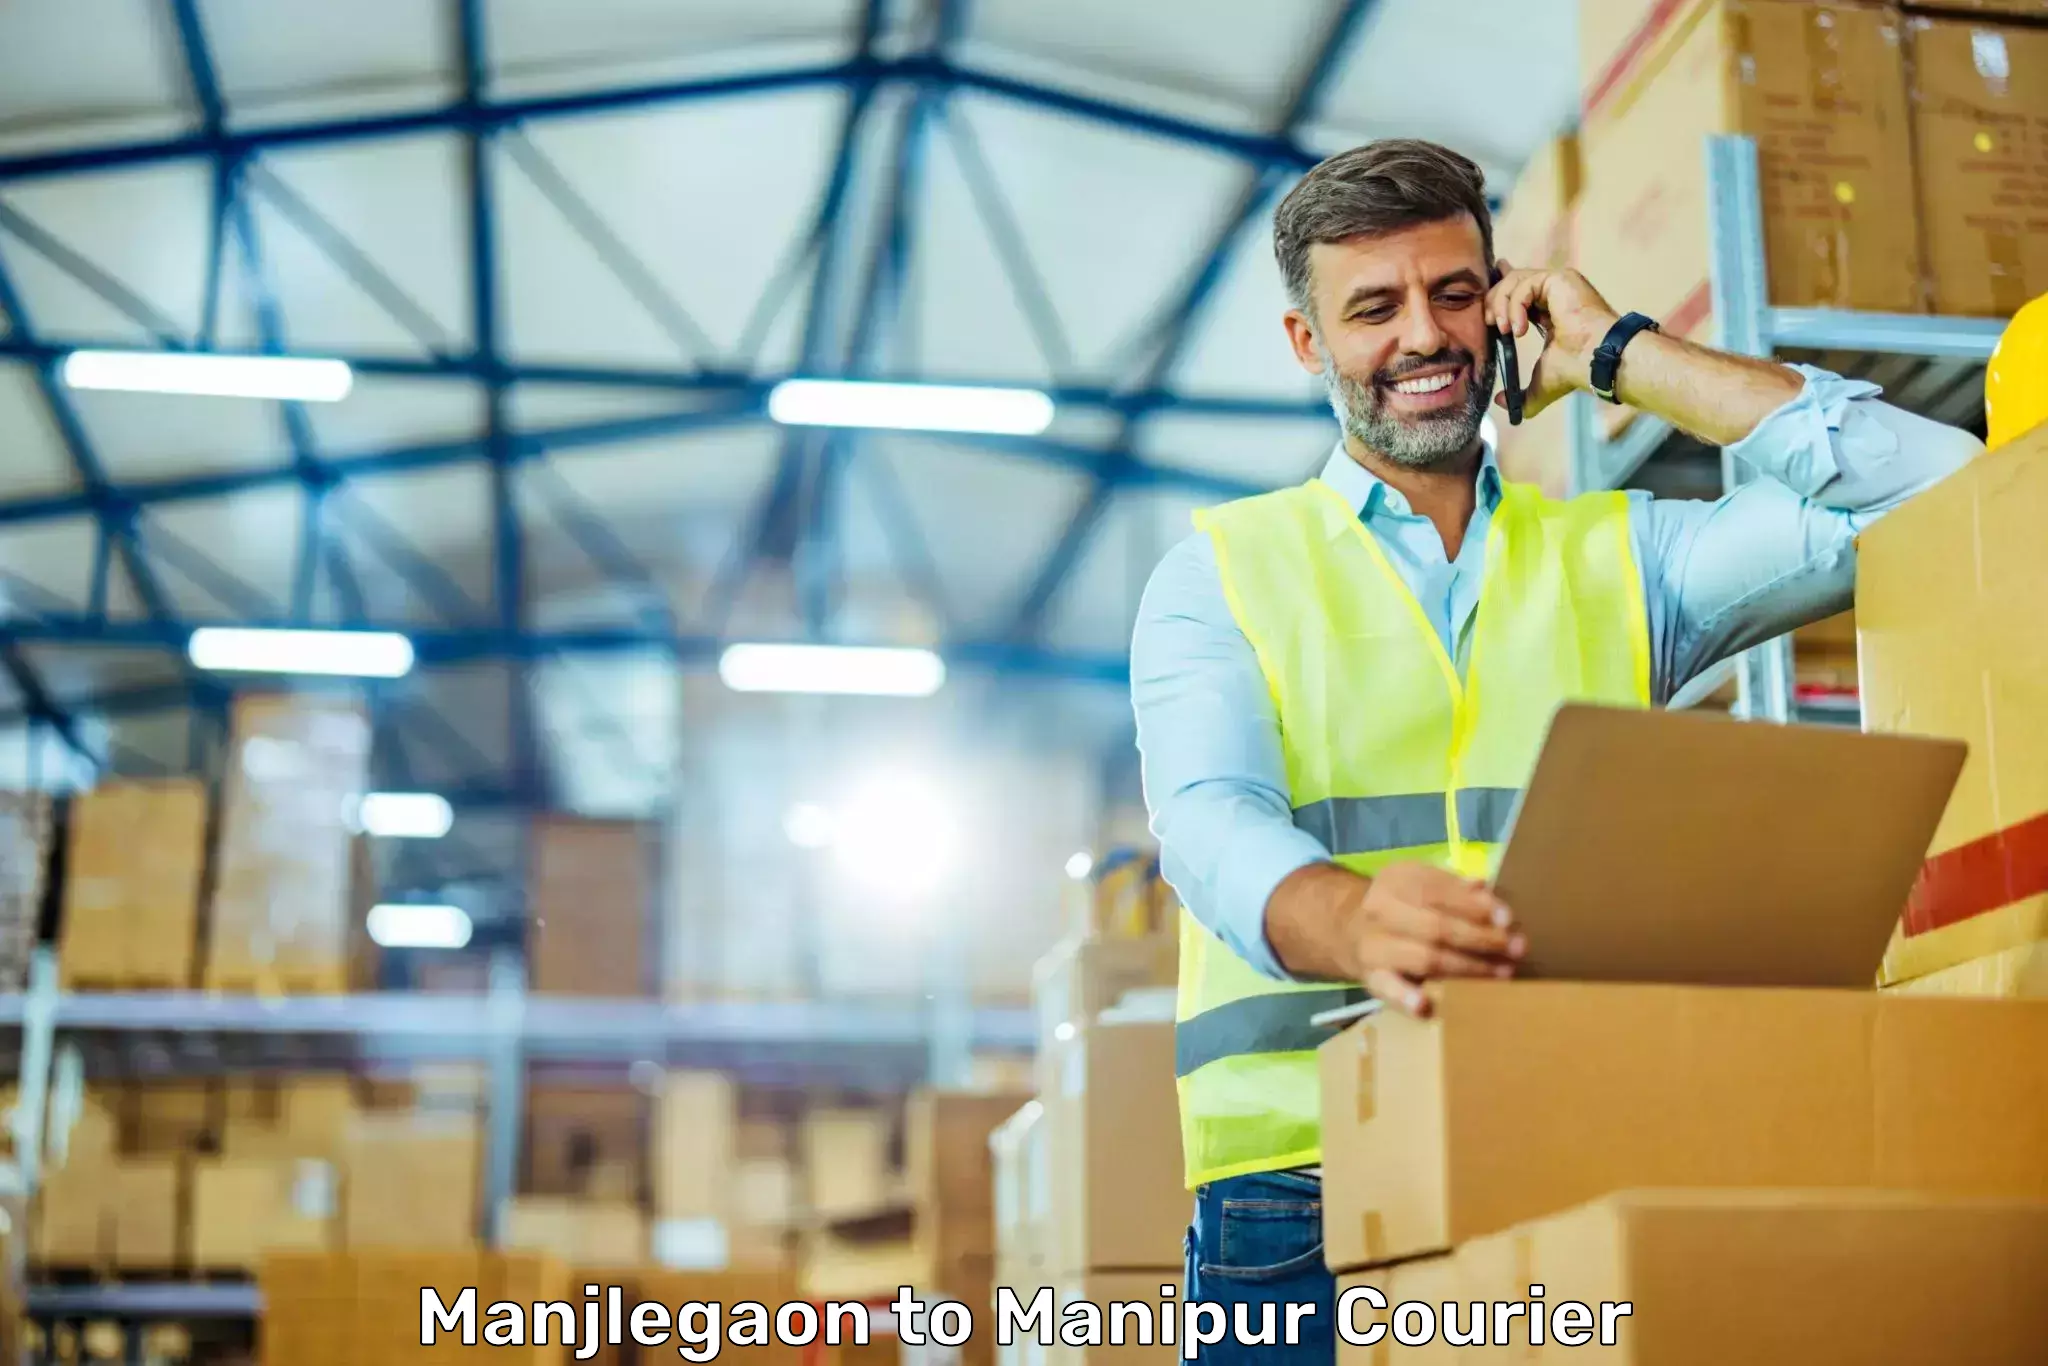 Door-to-door freight service Manjlegaon to Chandel